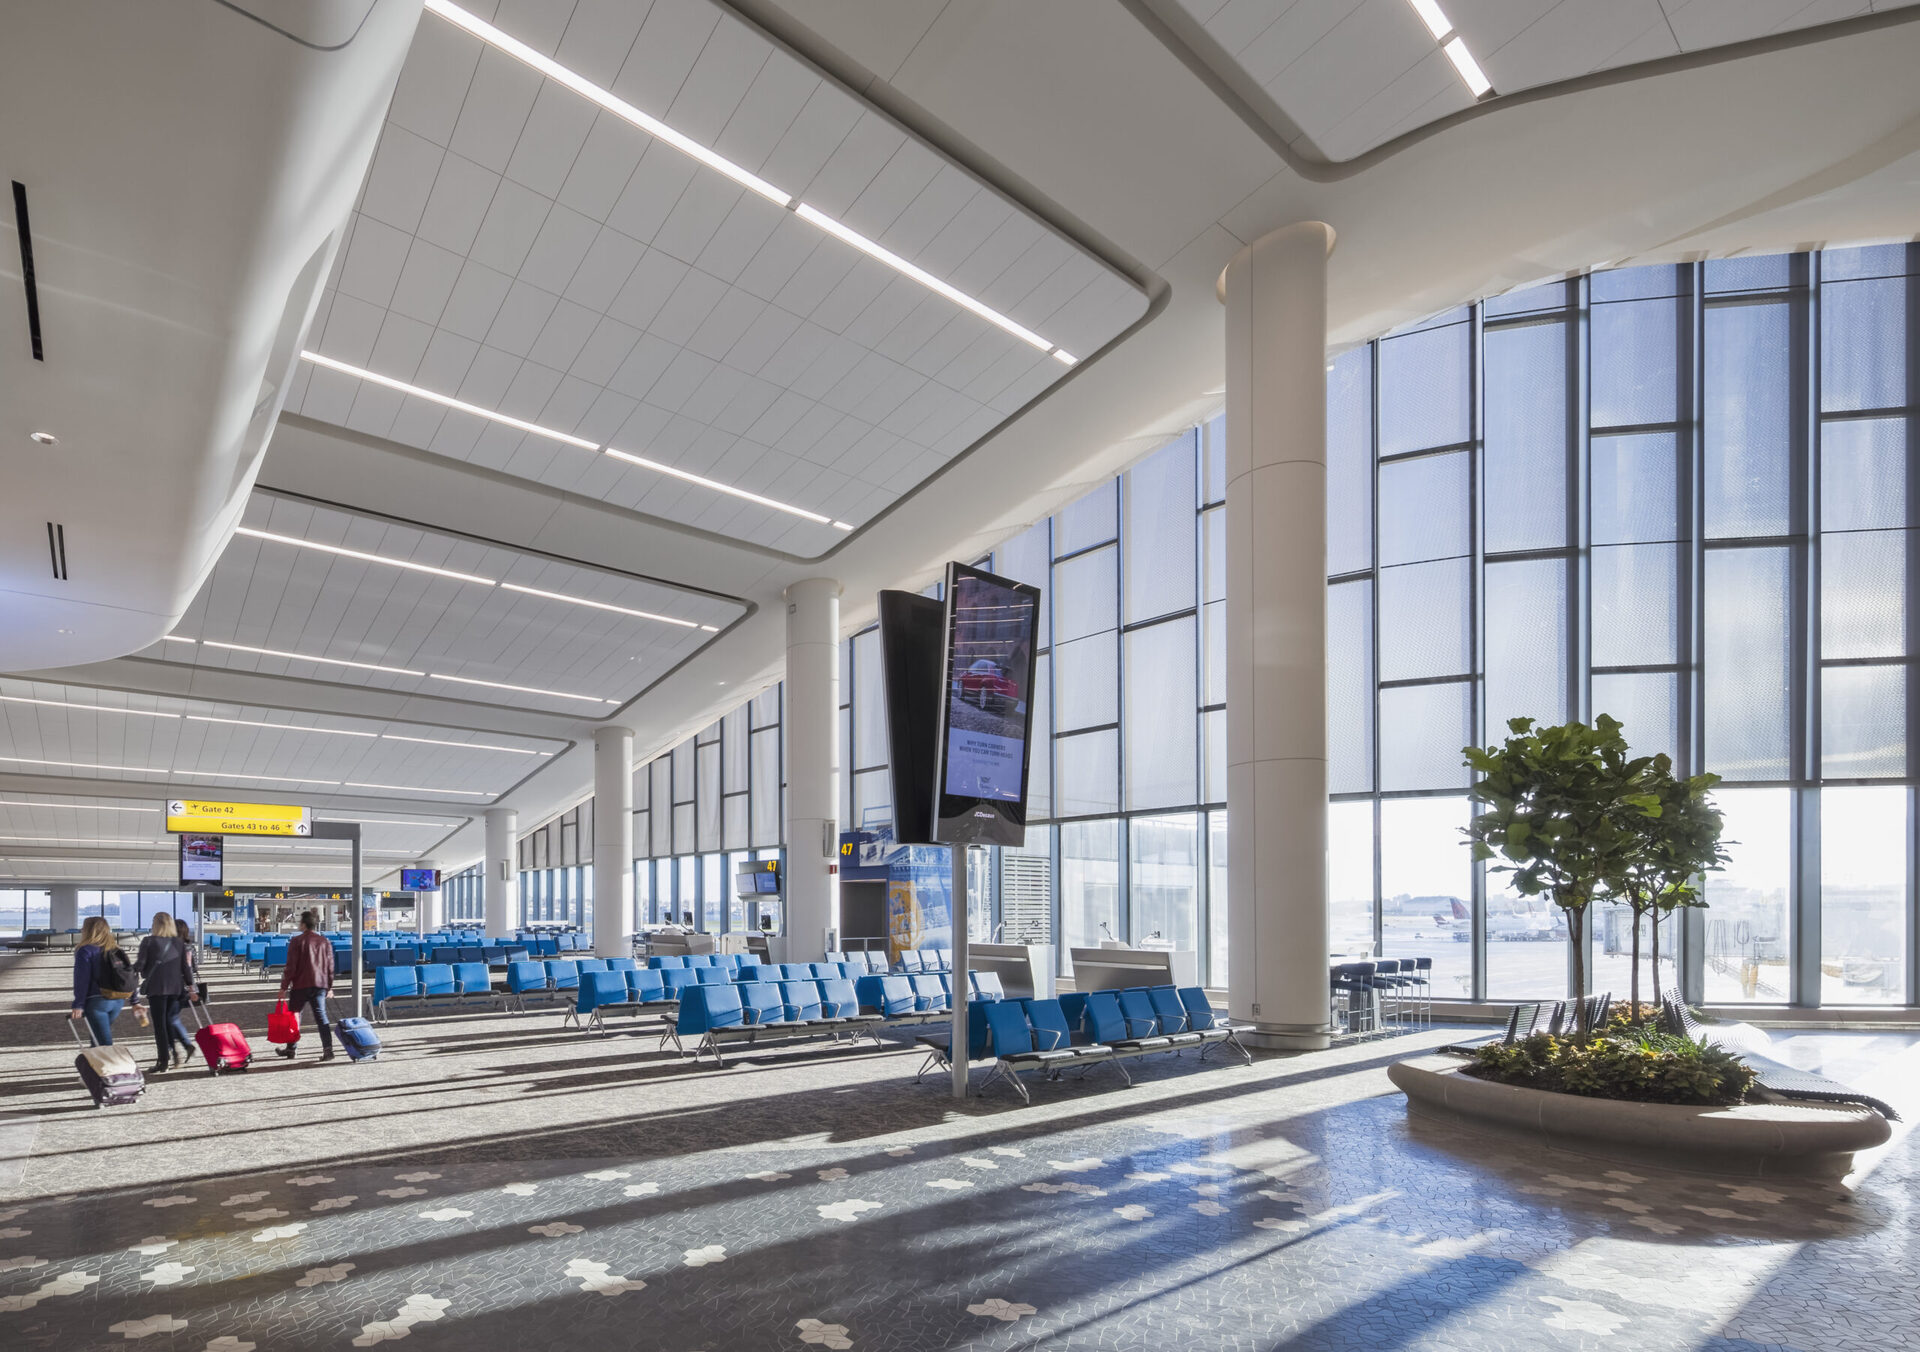 Novo terminal do aeroporto La Guardia, o mais central de Nova York